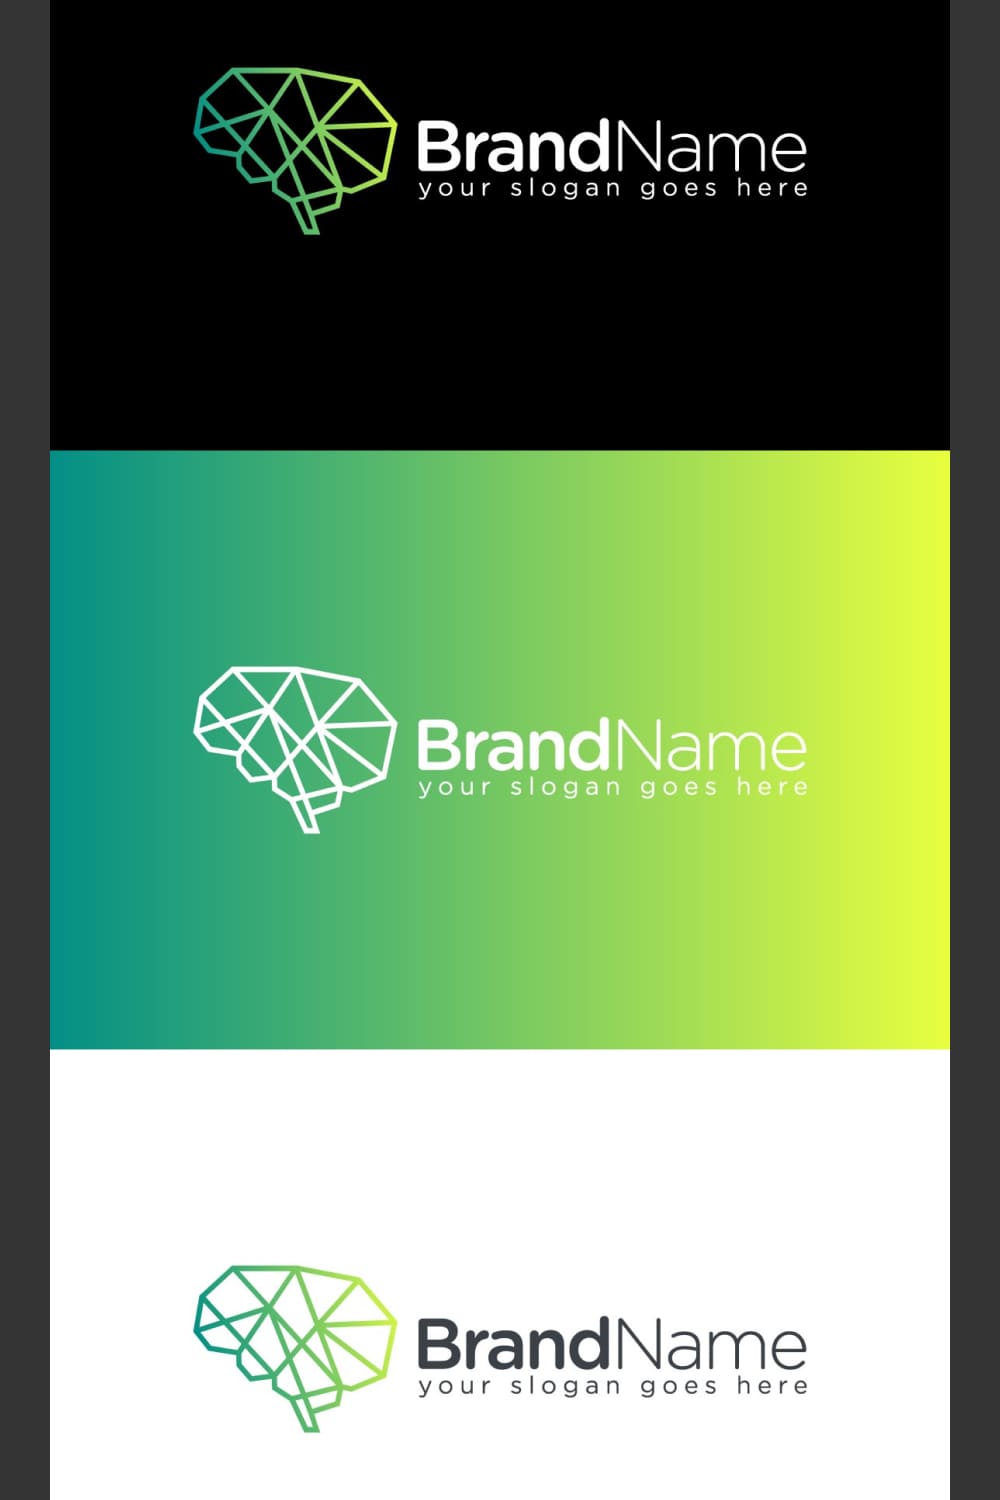 Modern logo design in 3 color variation.